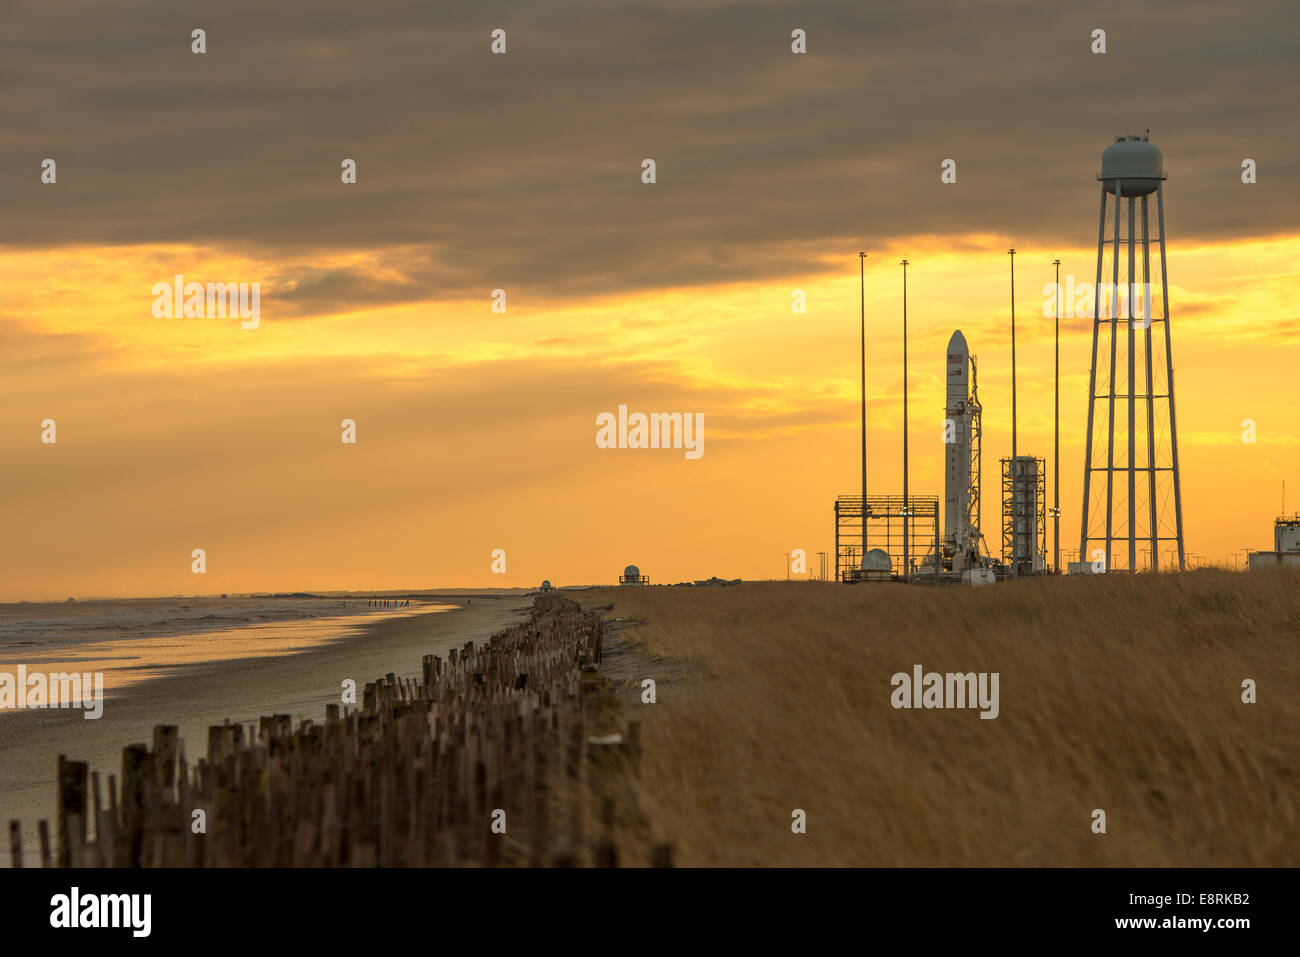 Un Orbital Sciences Corporation Antares rocket è visto su Launch Pad-0A in corrispondenza di NASA Wallops Flight Facility, lunedì 6 gennaio 20 Foto Stock